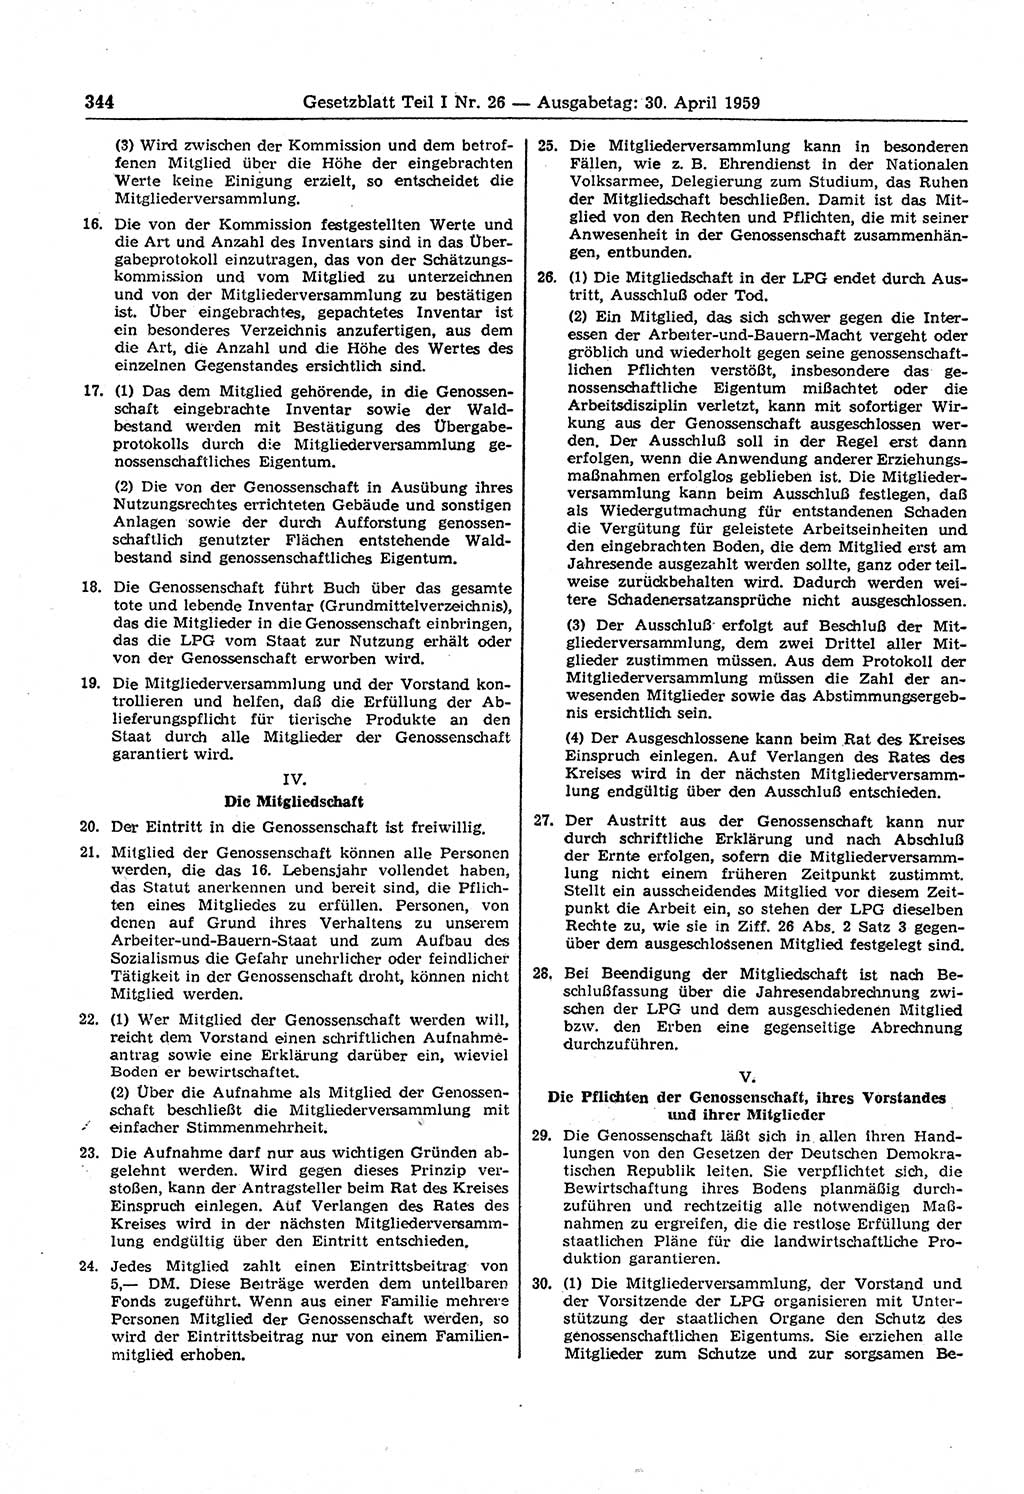 Gesetzblatt (GBl.) der Deutschen Demokratischen Republik (DDR) Teil Ⅰ 1959, Seite 344 (GBl. DDR Ⅰ 1959, S. 344)